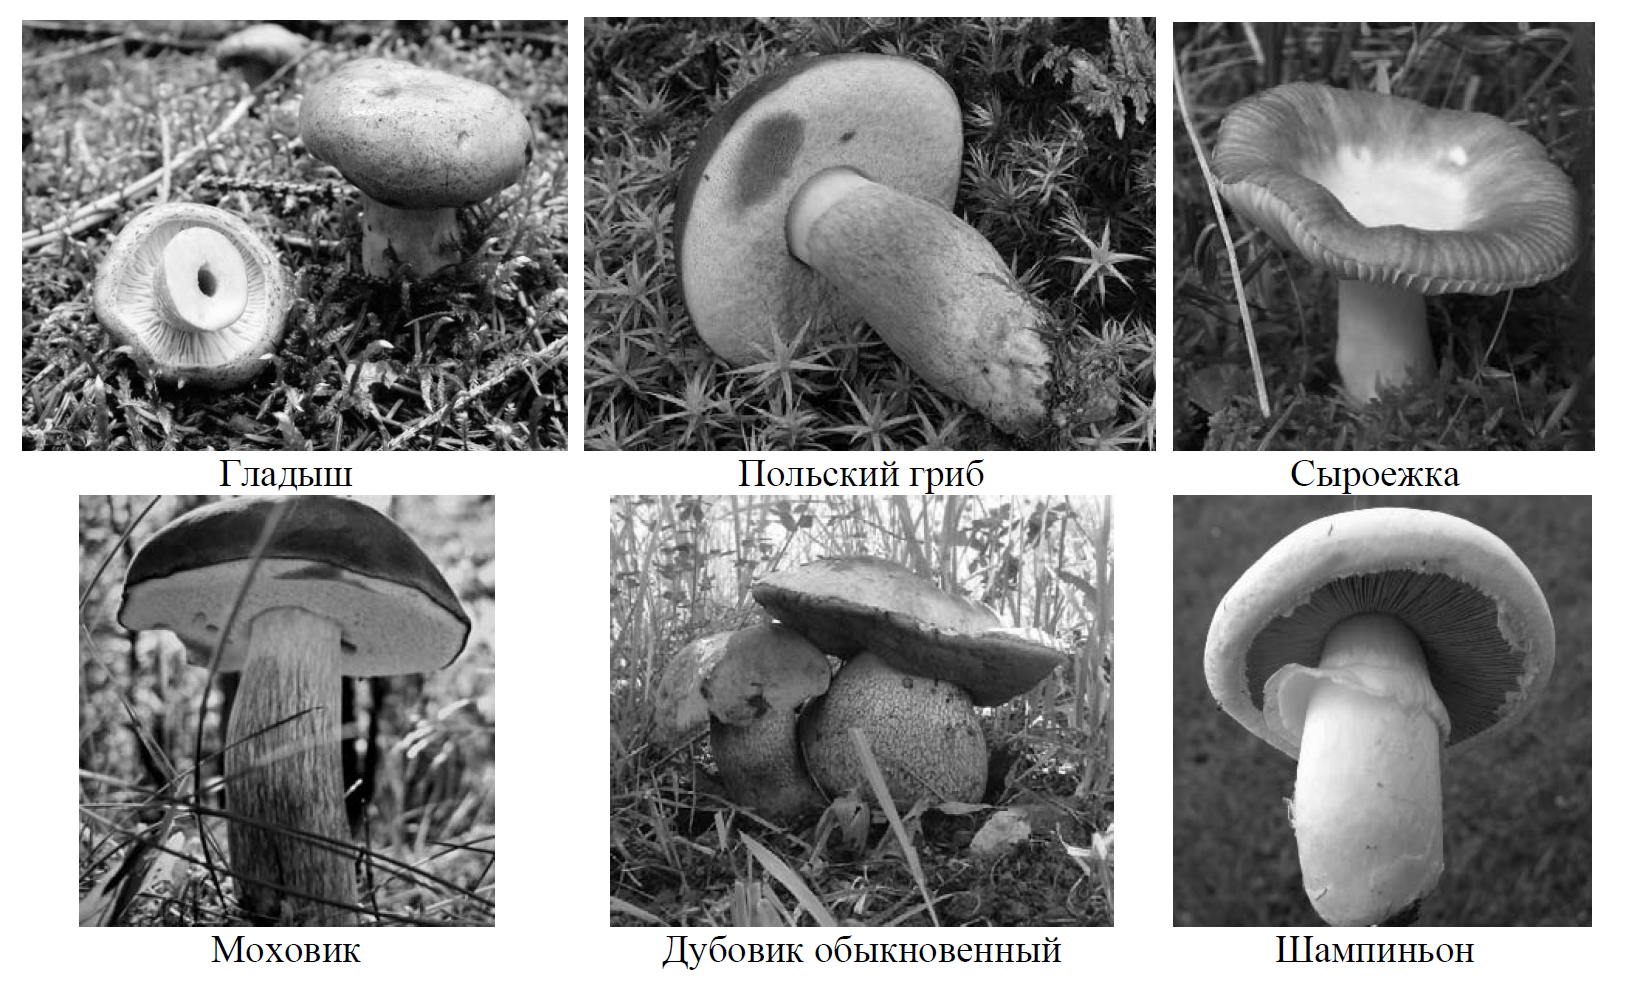 Какое основание позволило разделить грибы. Рассмотрим фотографии узнай грибы и Подпиши их названия. 4. Рассмотри фотографии. Узнай грибы и Подпиши их названия.. Разделить грибы на группы ВПР.